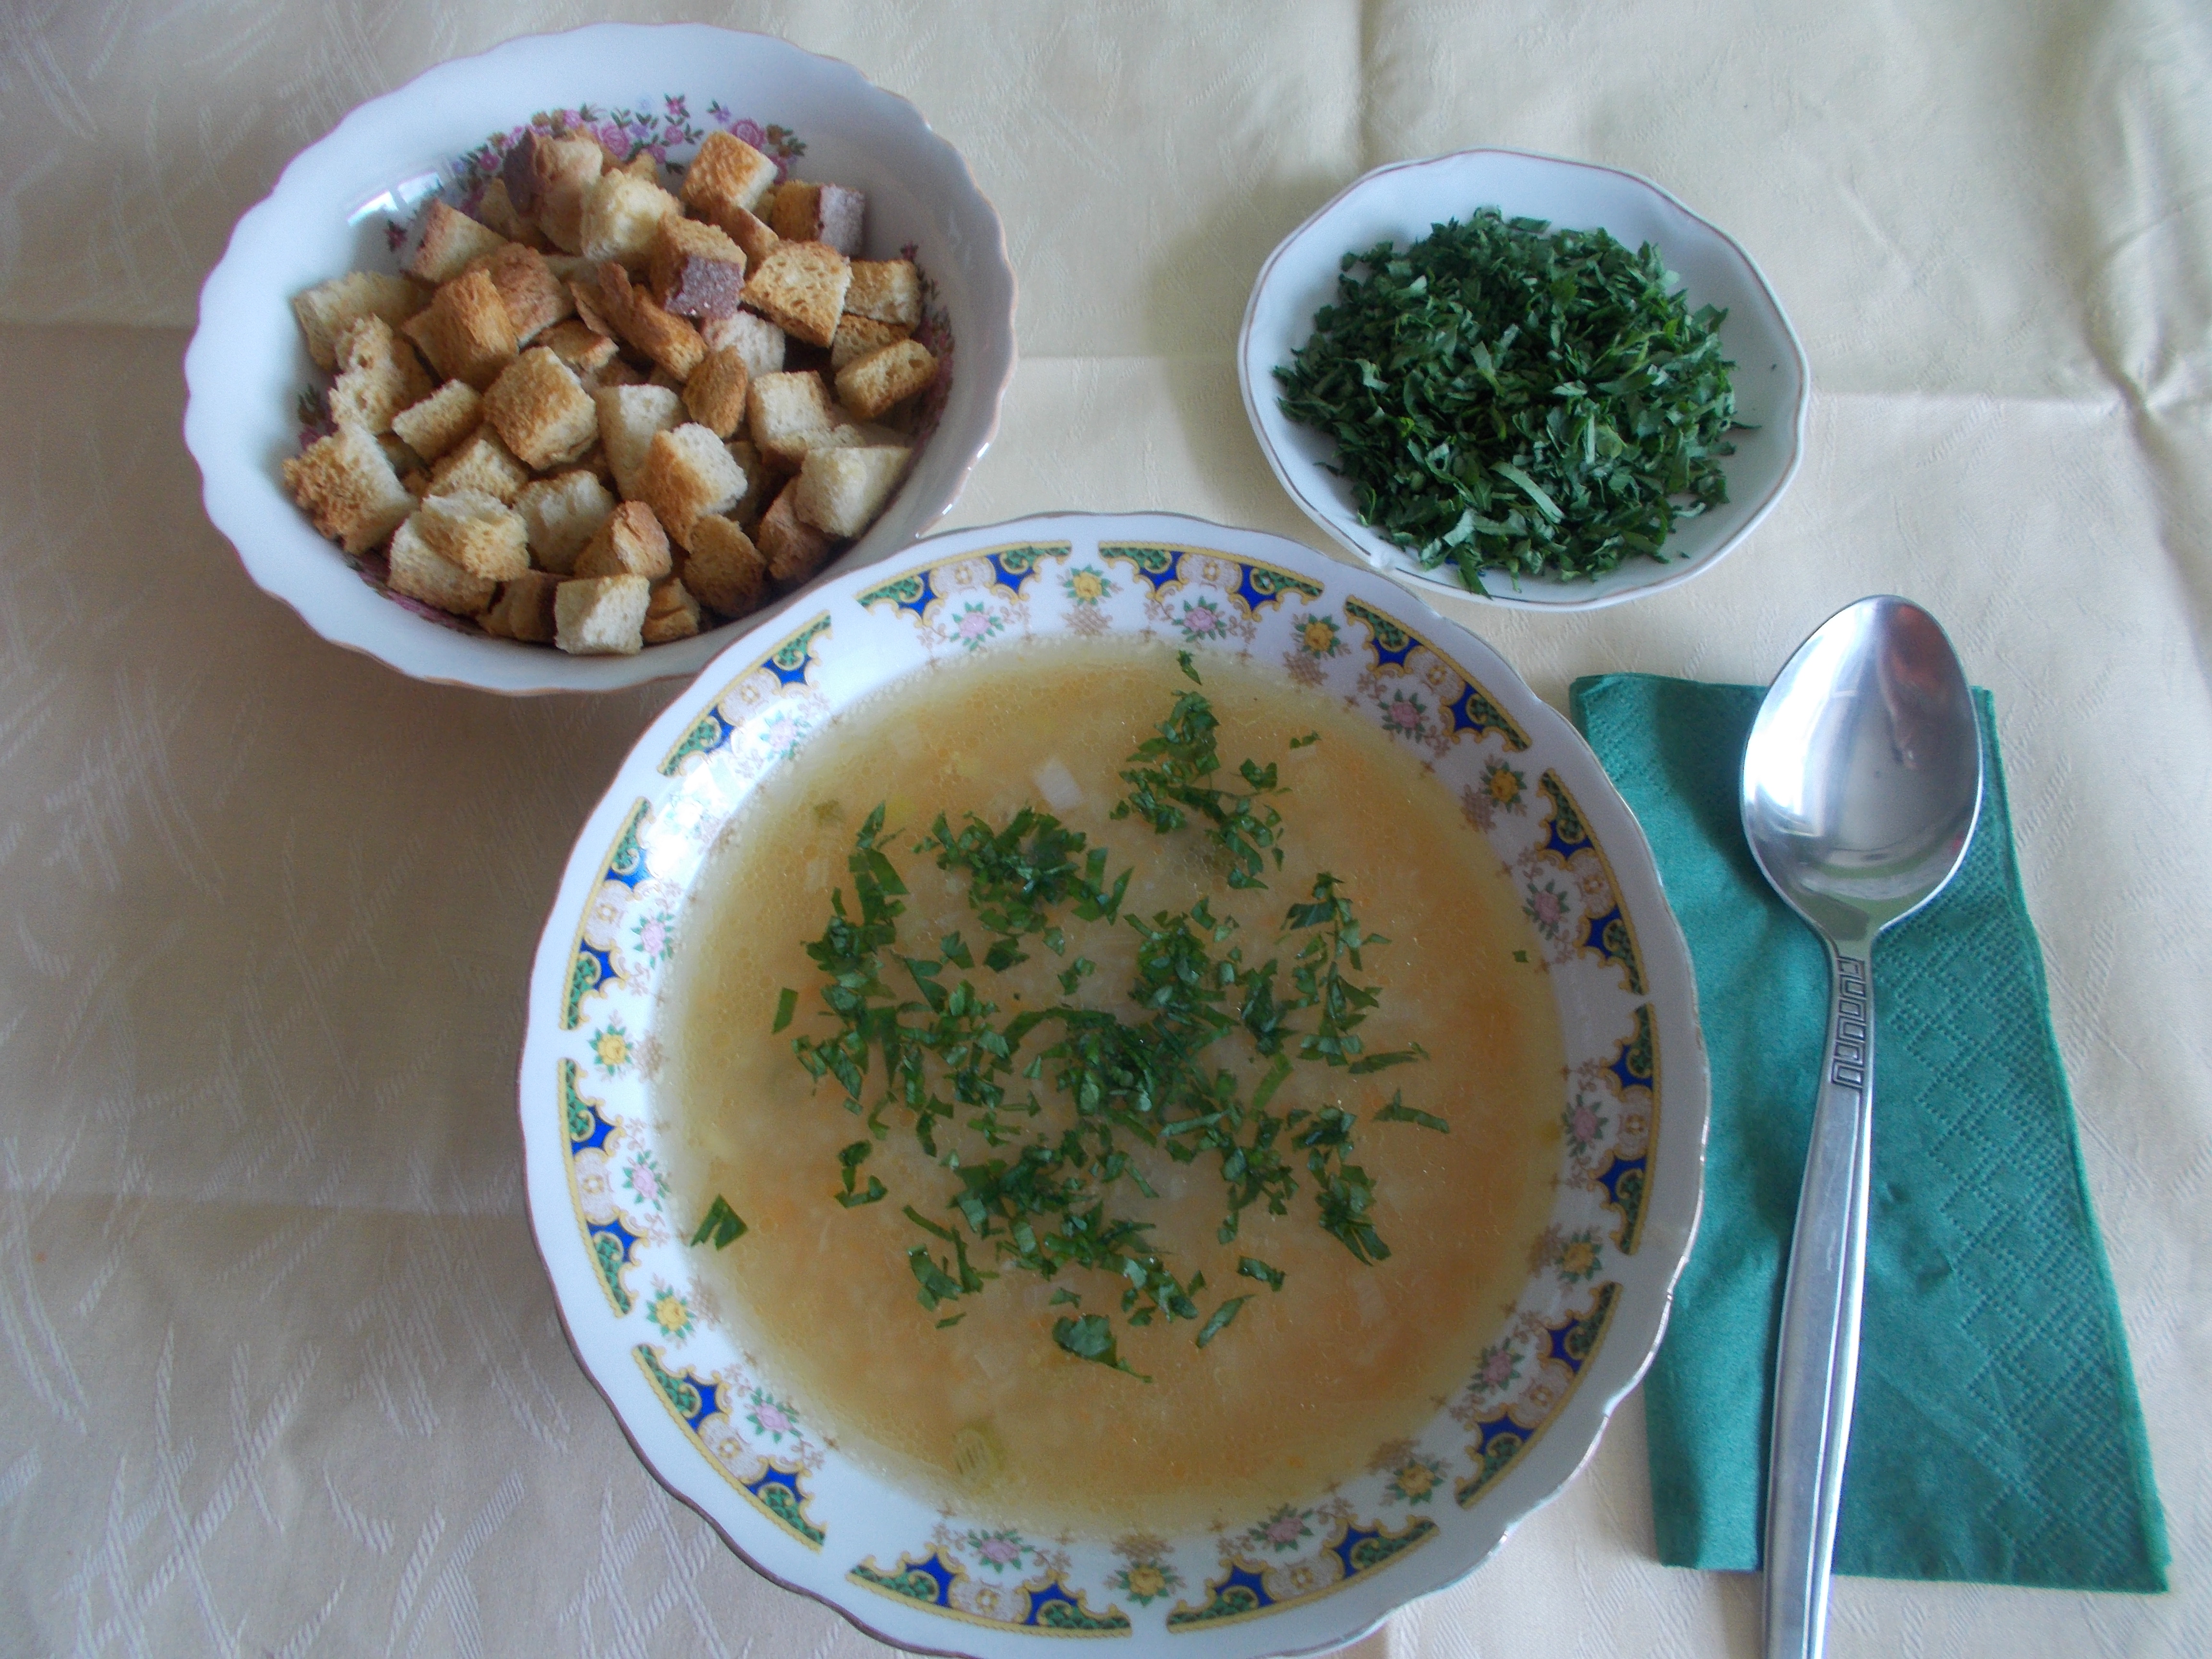 Supa-crema de legume, cu crutoane